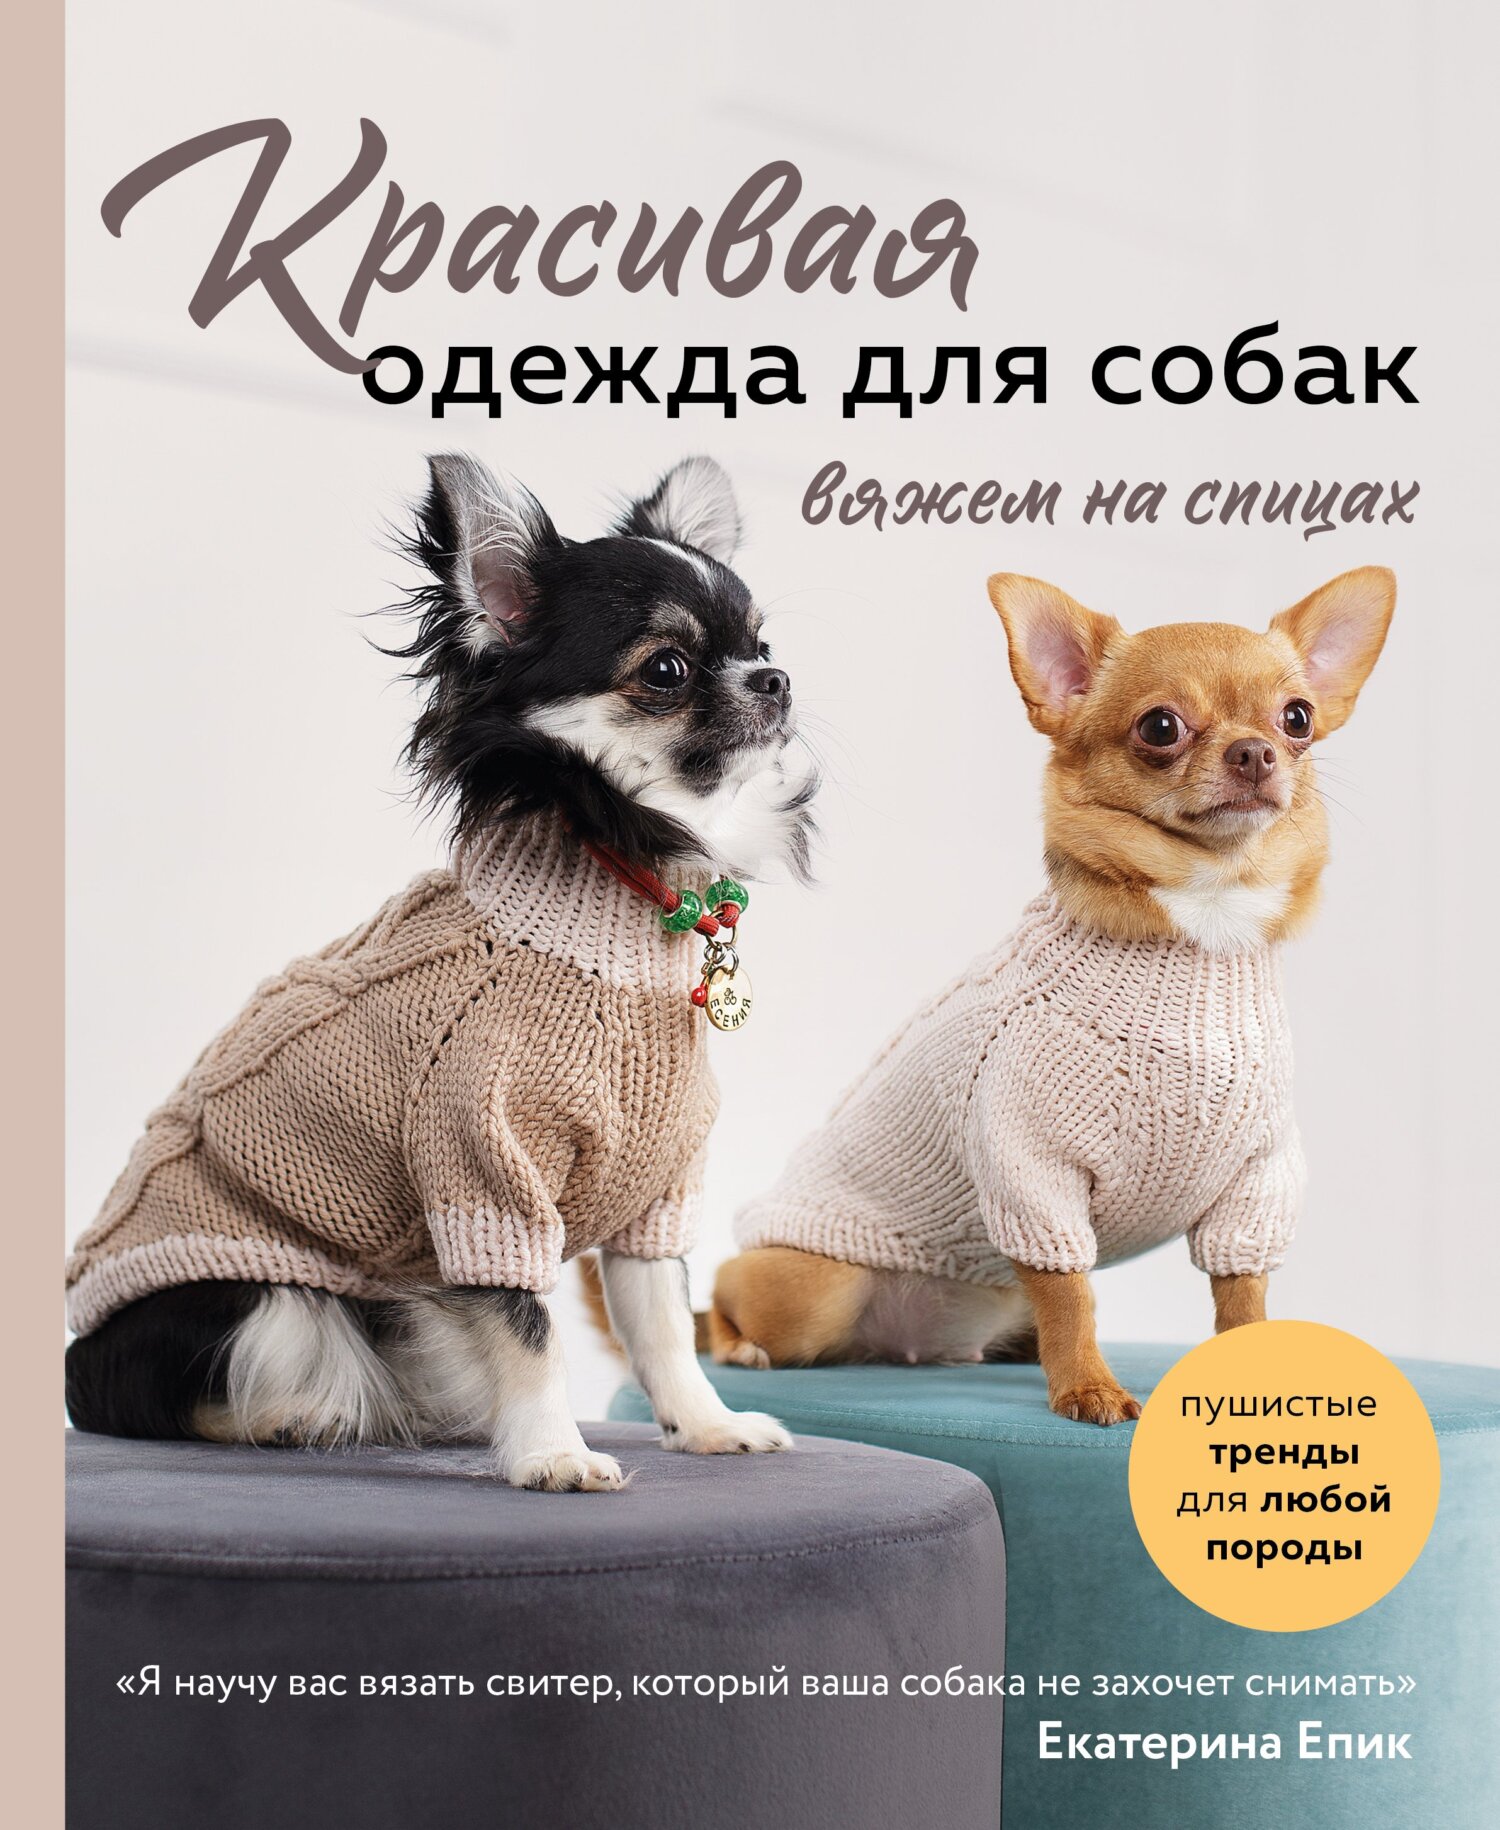 Необходимые материалы для вязания костюма для собаки: